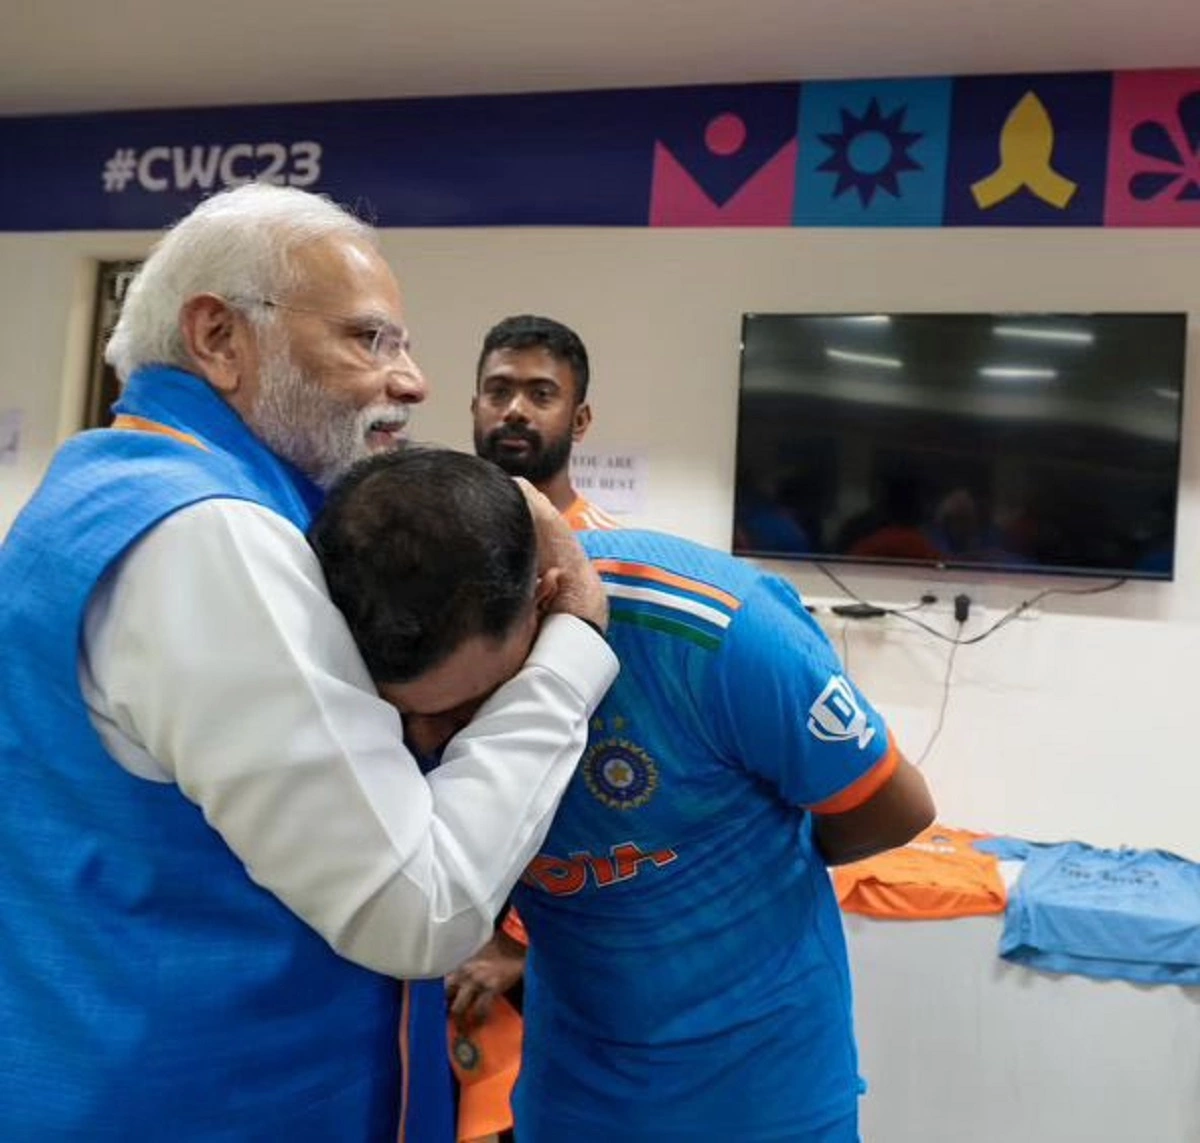 PM Modi meets Team India in the dressing room: ڈریسنگ روم میں ٹیم انڈیا سے پی ایم مودی کی ملاقات، یوٹیوب پر نمبر 1 ٹرینڈ کر رہا ہے یہ ویڈیو